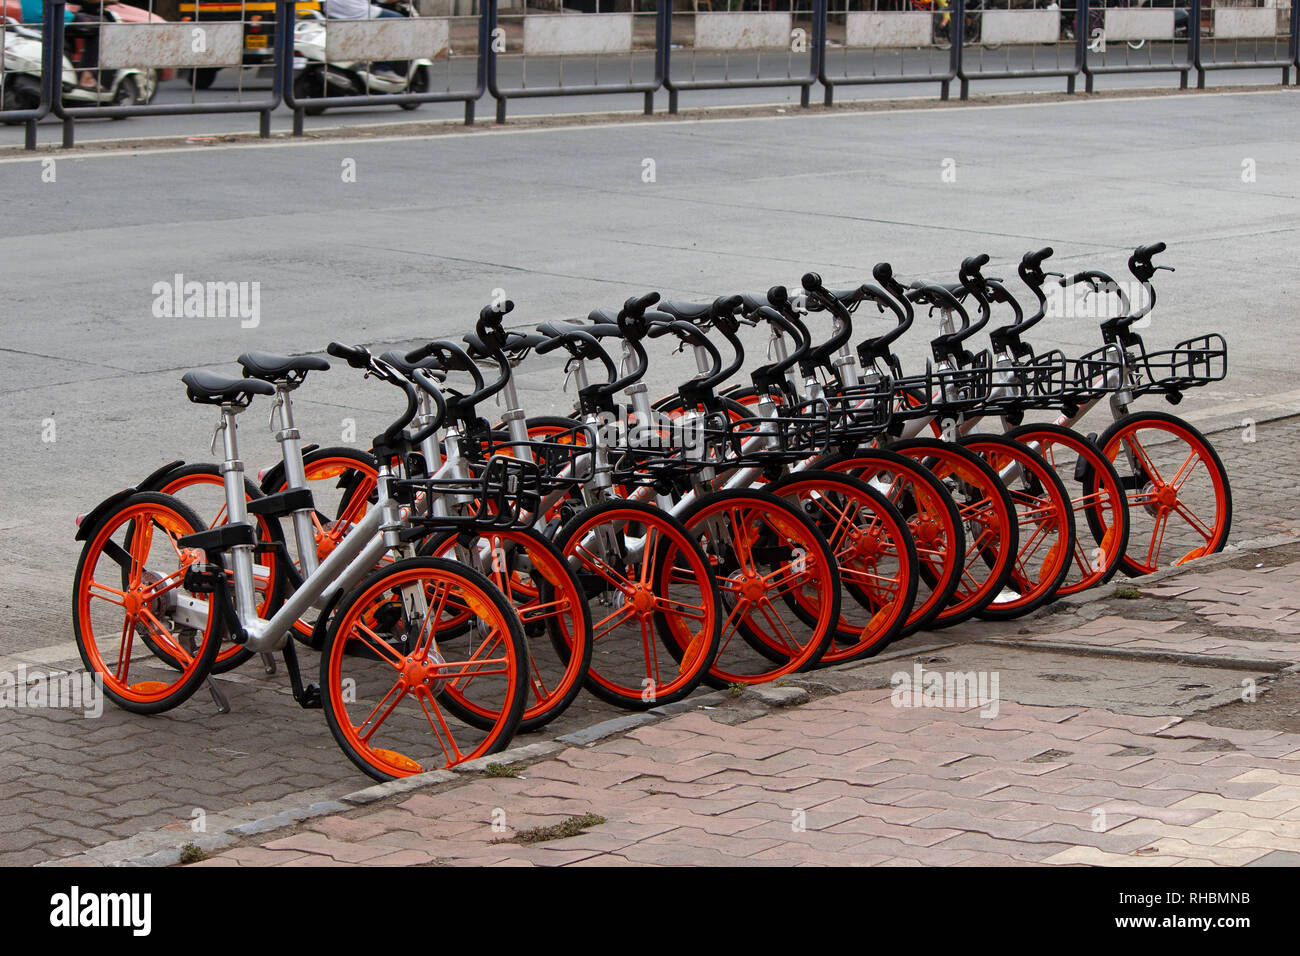 Zyklus stehen auf der Straße, Pune, Maharashtra, Indien Stockfoto